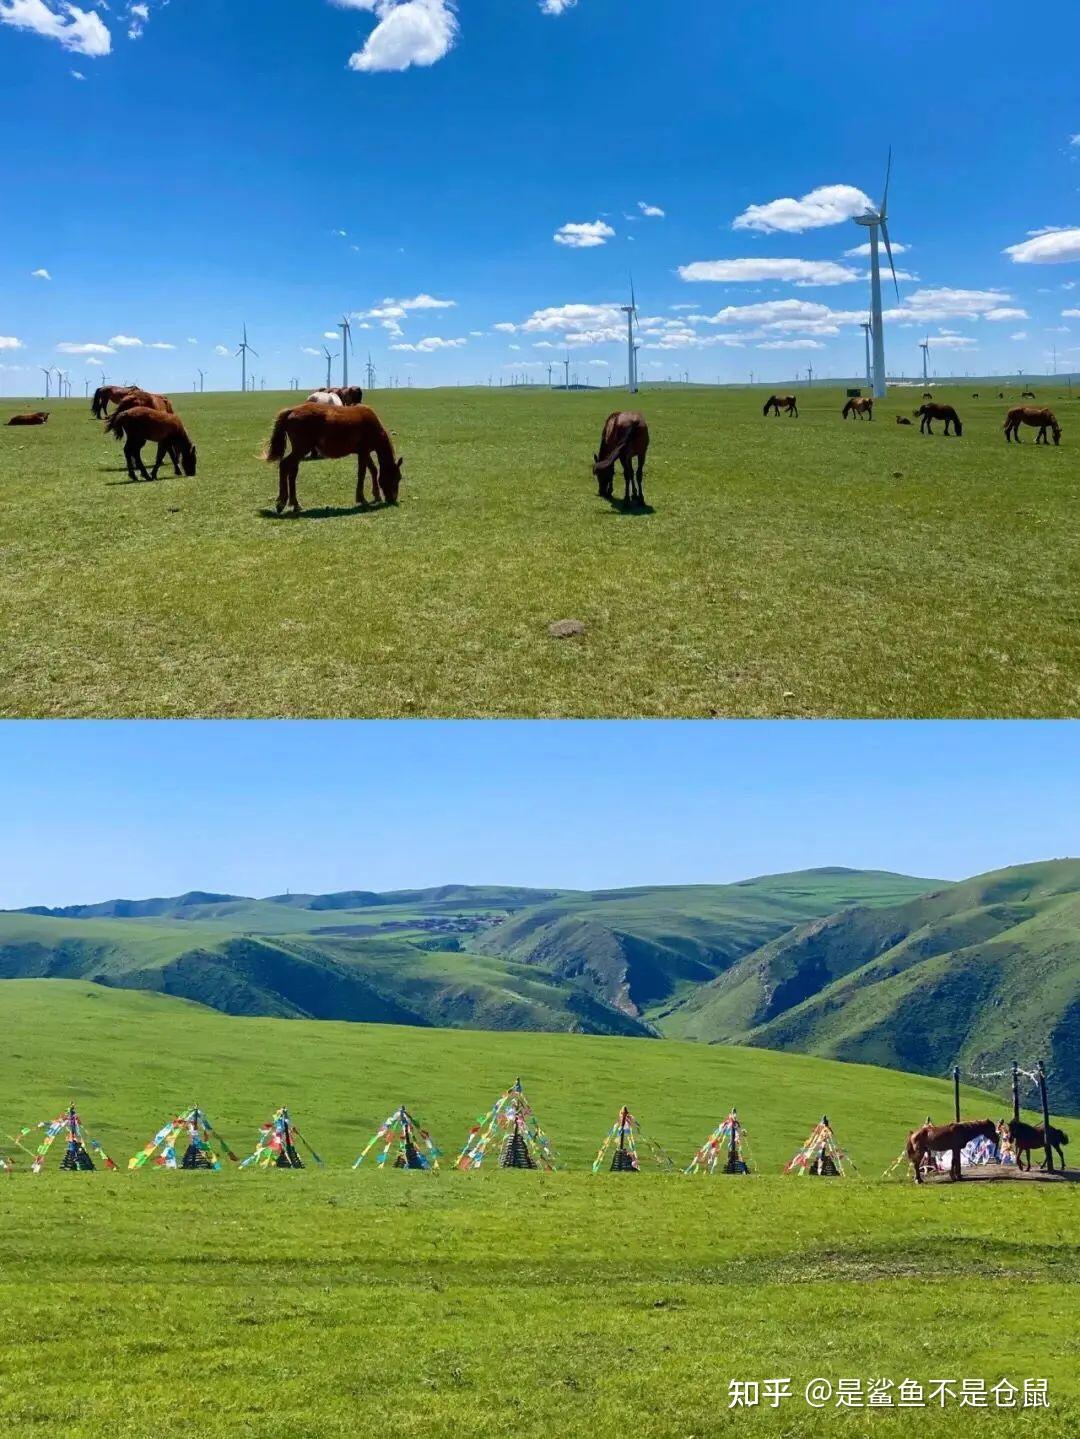 一个人去内蒙古旅游预算要多少钱？内蒙古旅游费用清单 - 知乎